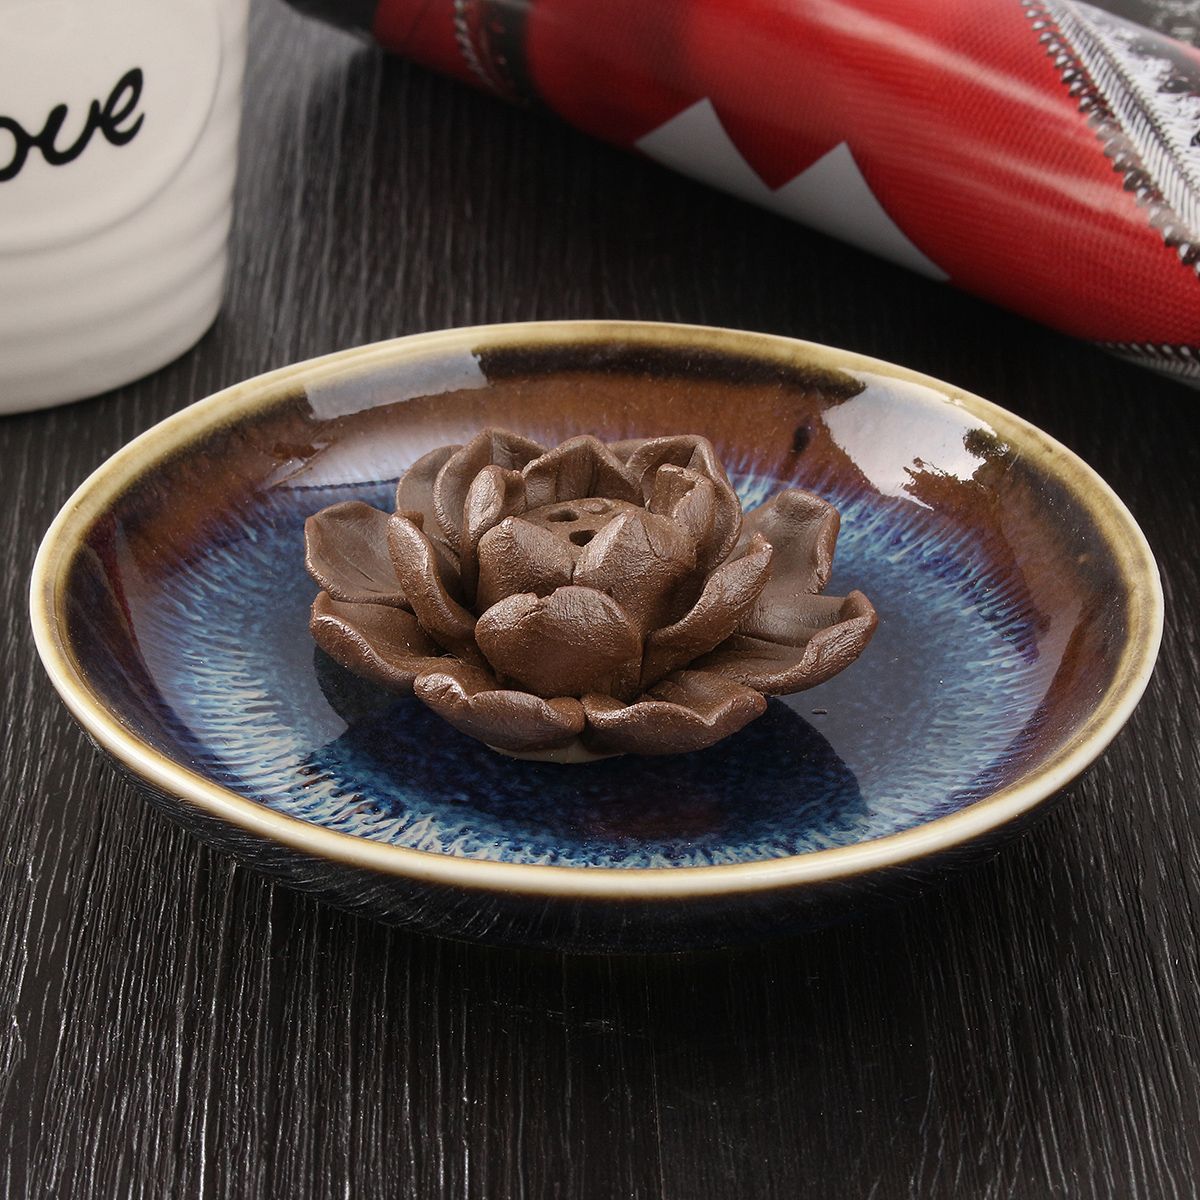 Ceramic-Incense-Burner-Holder-Burner-Lotus-Plate-Censer-Home-Fragrances-3-Incense-Holes-1470273